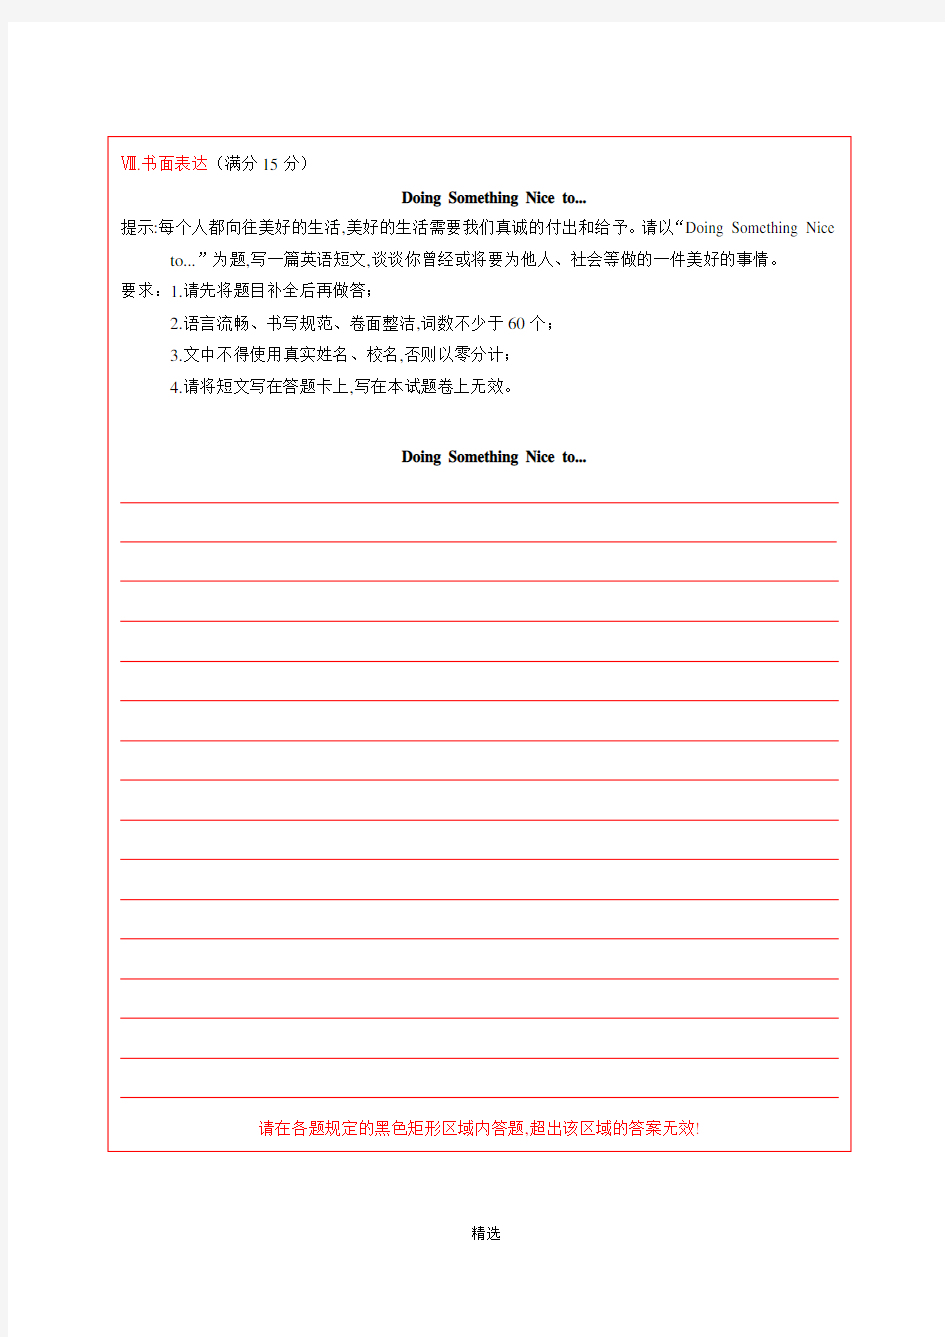 2018年云南英语中考答题卡(修改版 7.5)